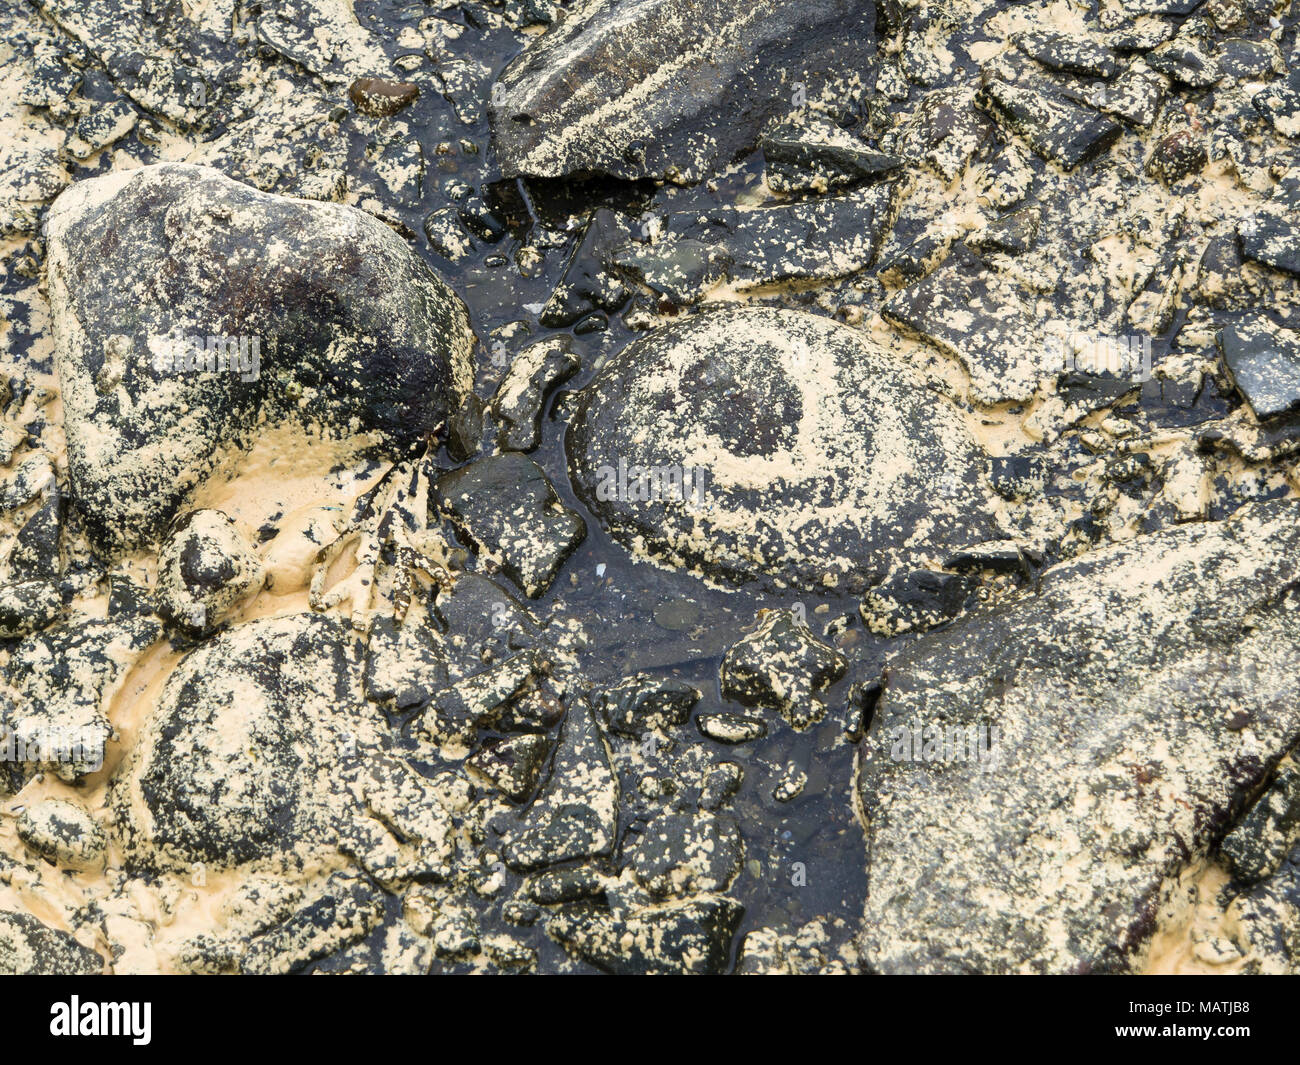 Las piedras y la arena de algas marinas en la costa del fiordo de Oslo en Noruega cubierto con granos de polen de los bosques circundantes, creando patrones abstractos Foto de stock